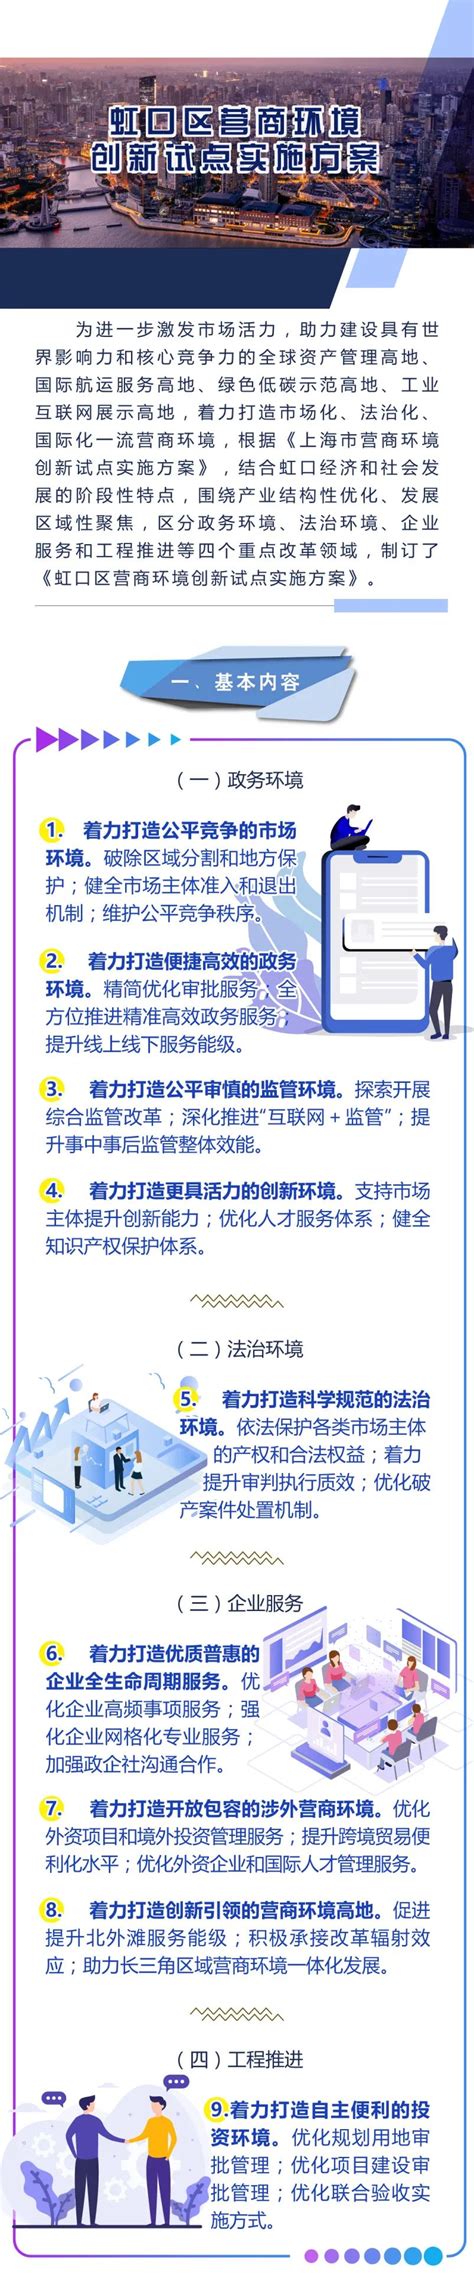 虹口区会议预约技术方案 服务至上「上海新柏石智能科技供应」 - 上海-8684网